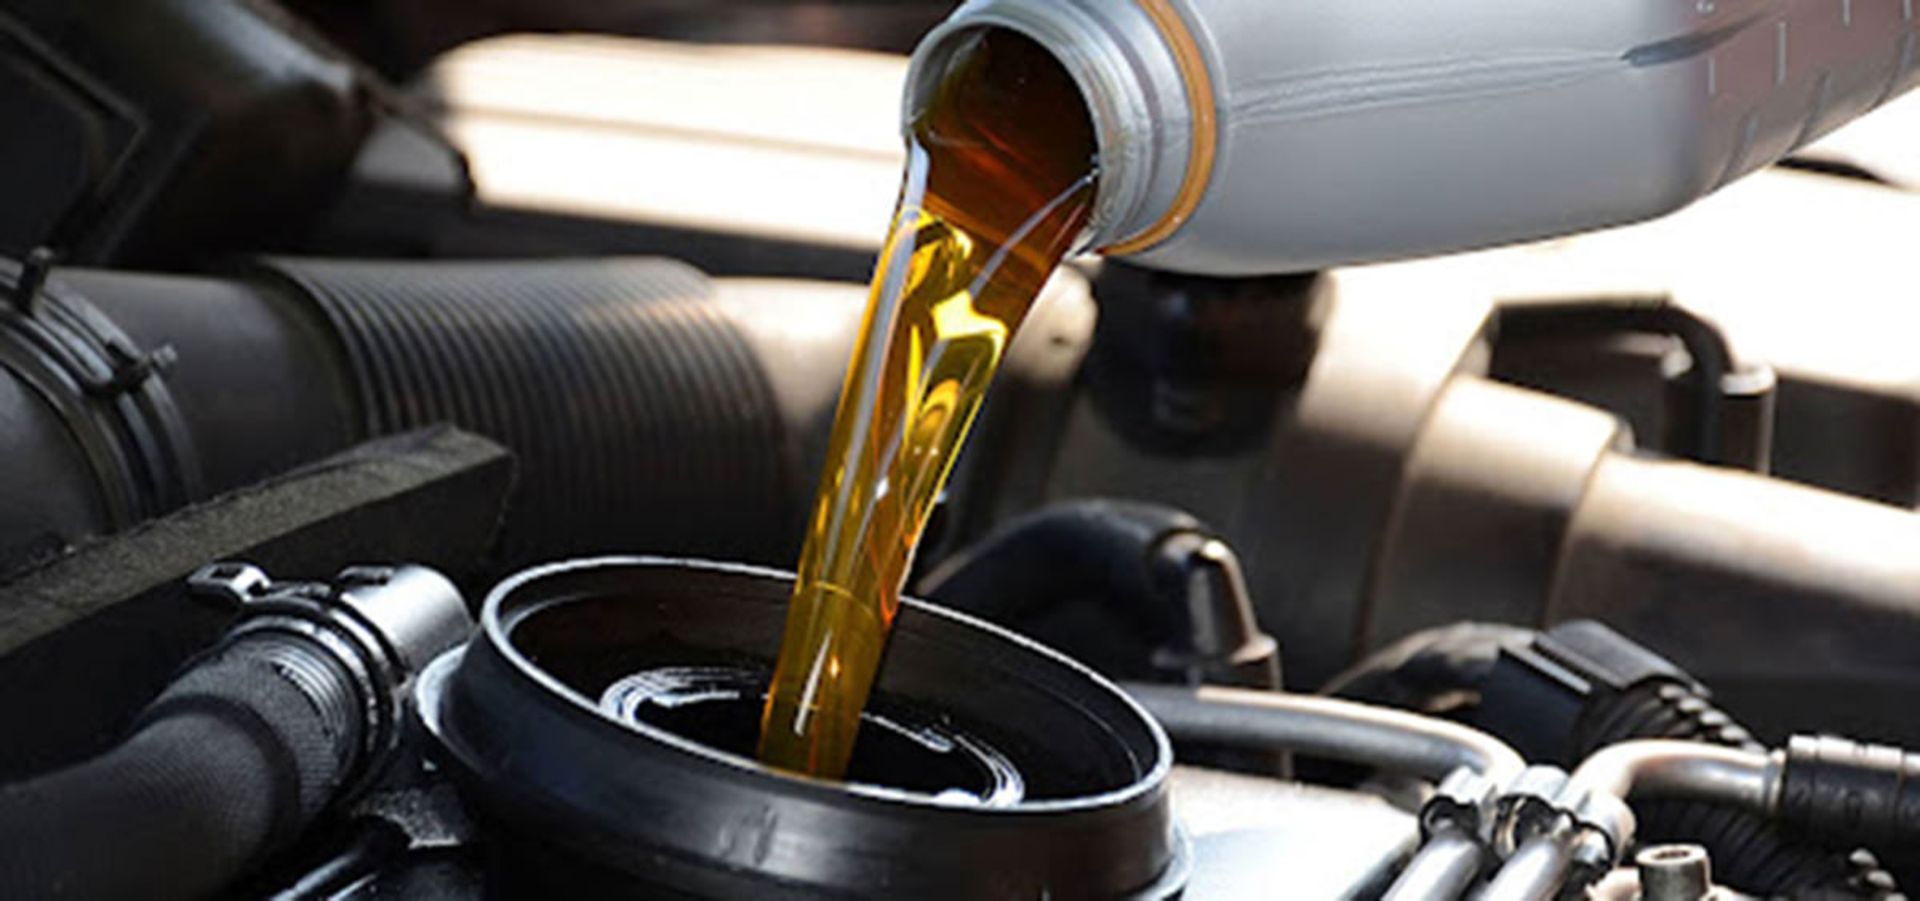 مرجع متخصصين ايران روغن موتور خودرو / Car Engine Oil در بسته بندي 